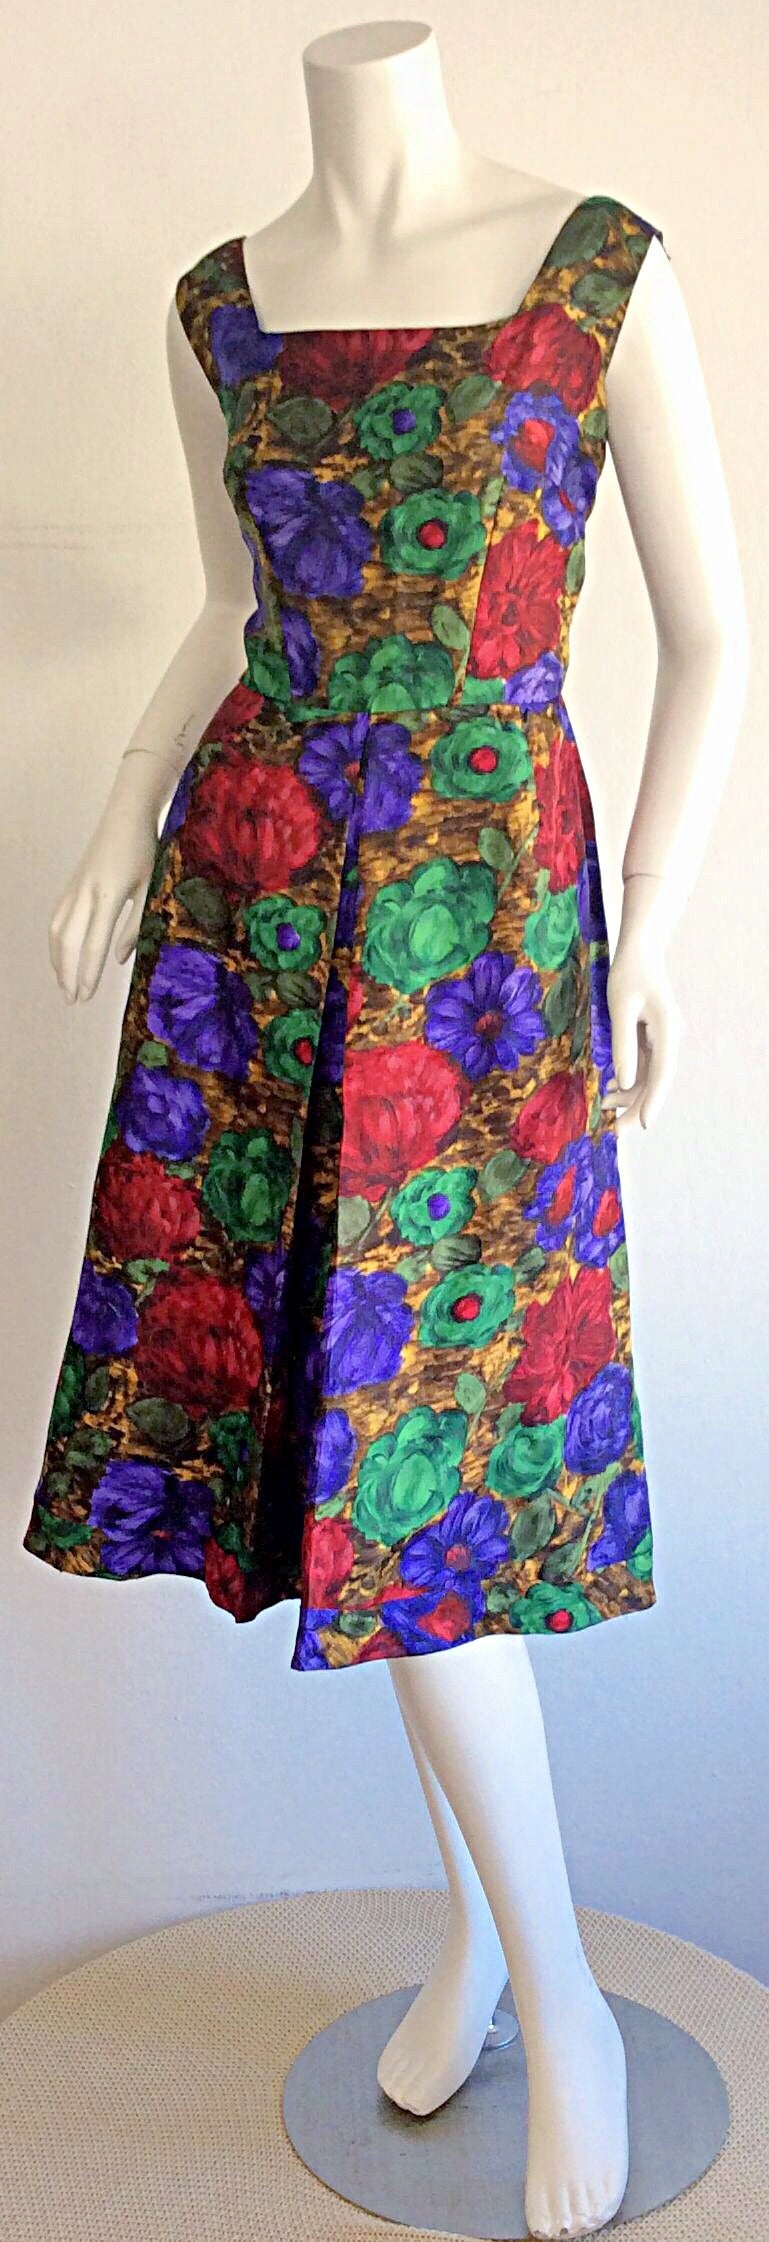 adele floral dress